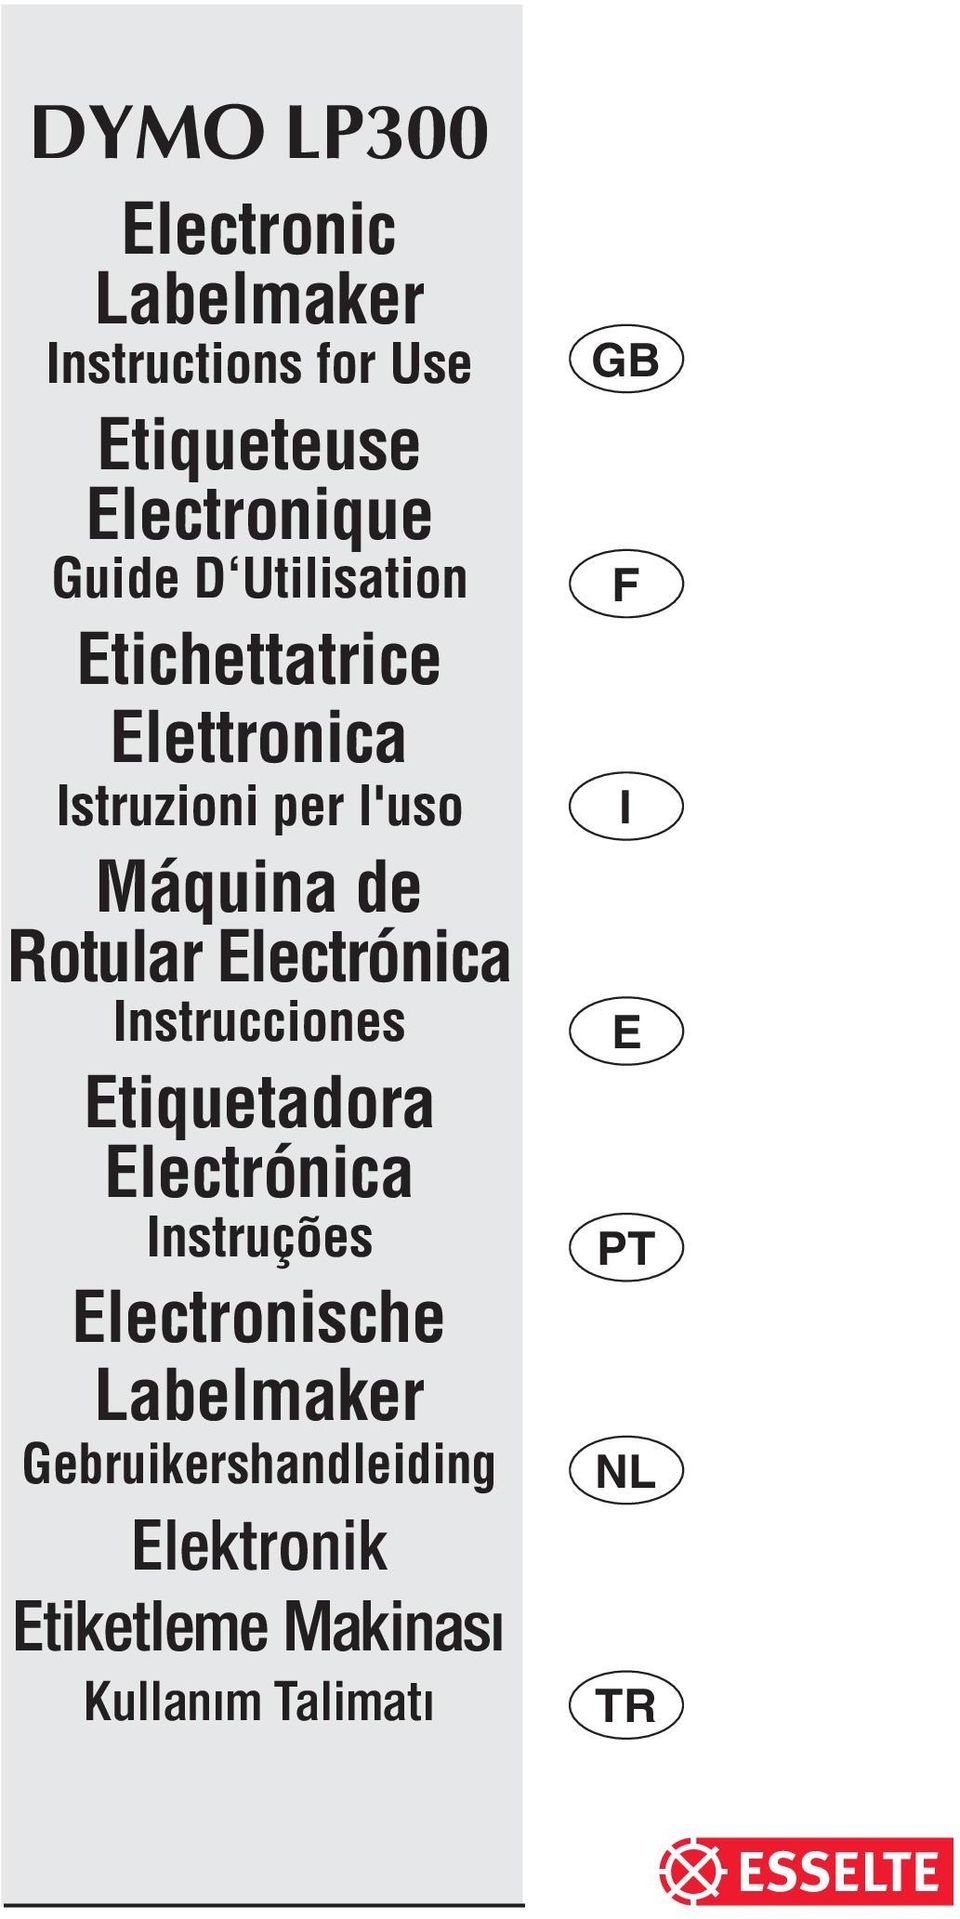 Electrónica Instrucciones Etiquetadora Electrónica Instruções Electronische